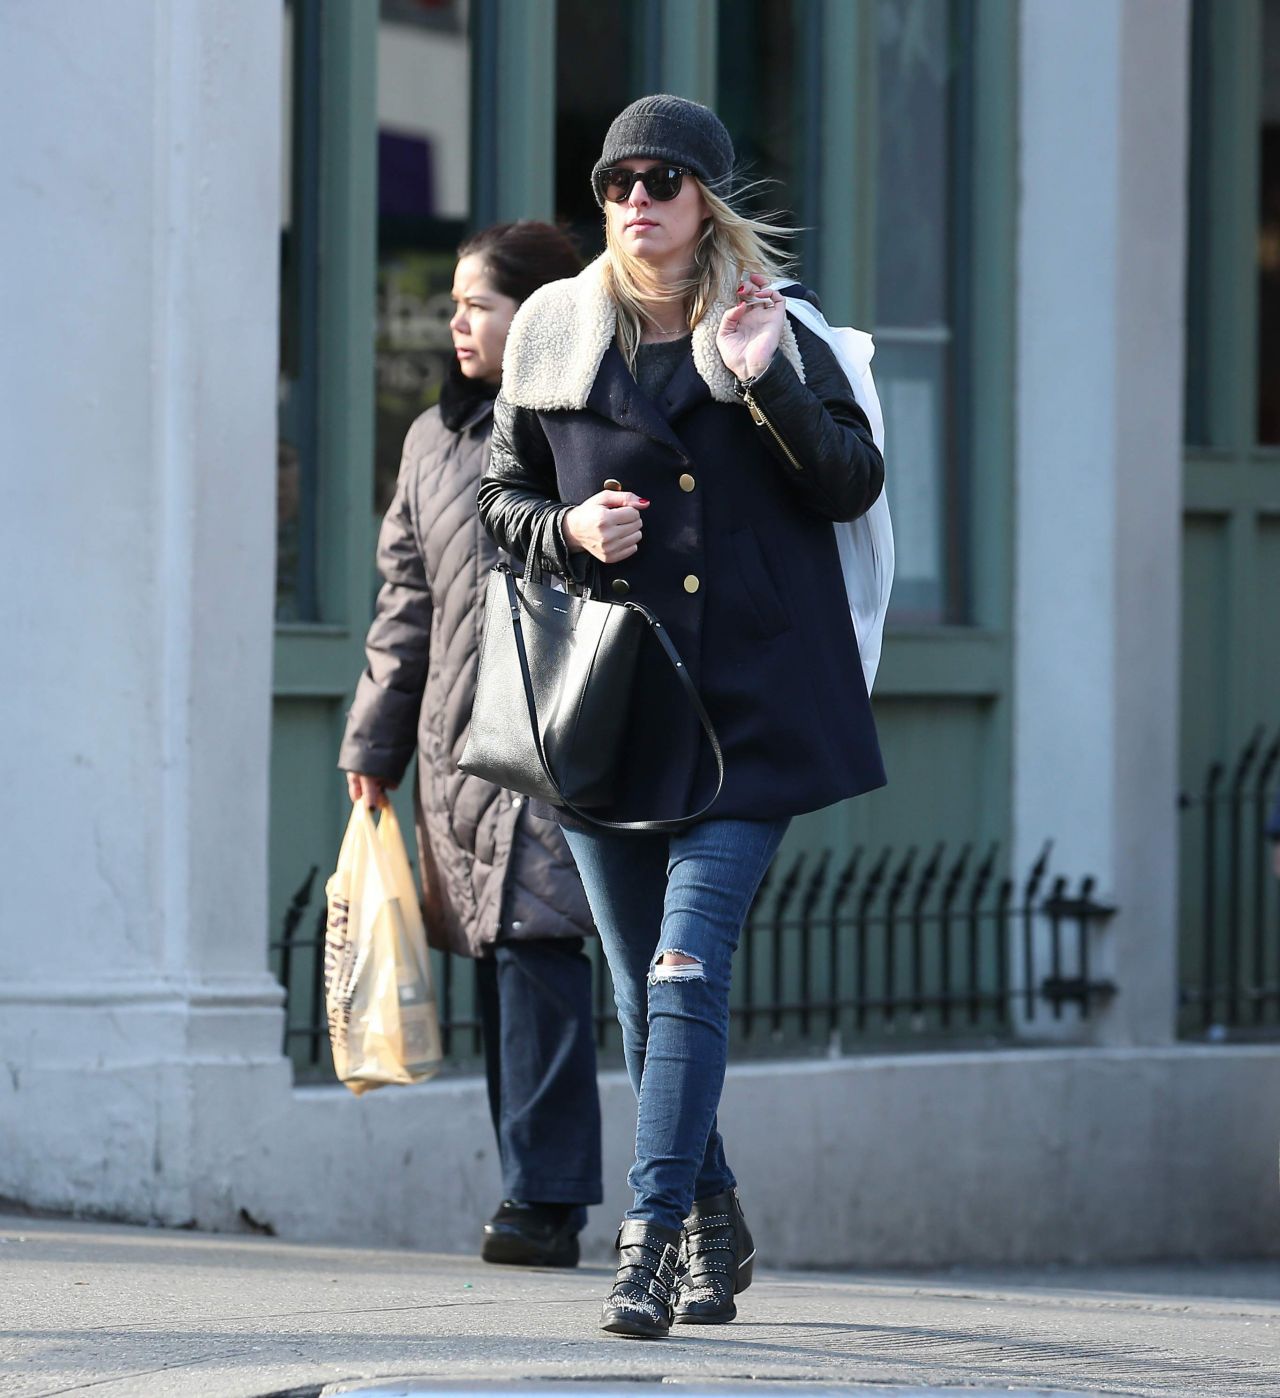 Nicky Hilton New York City March 19, 2015 – Star Style